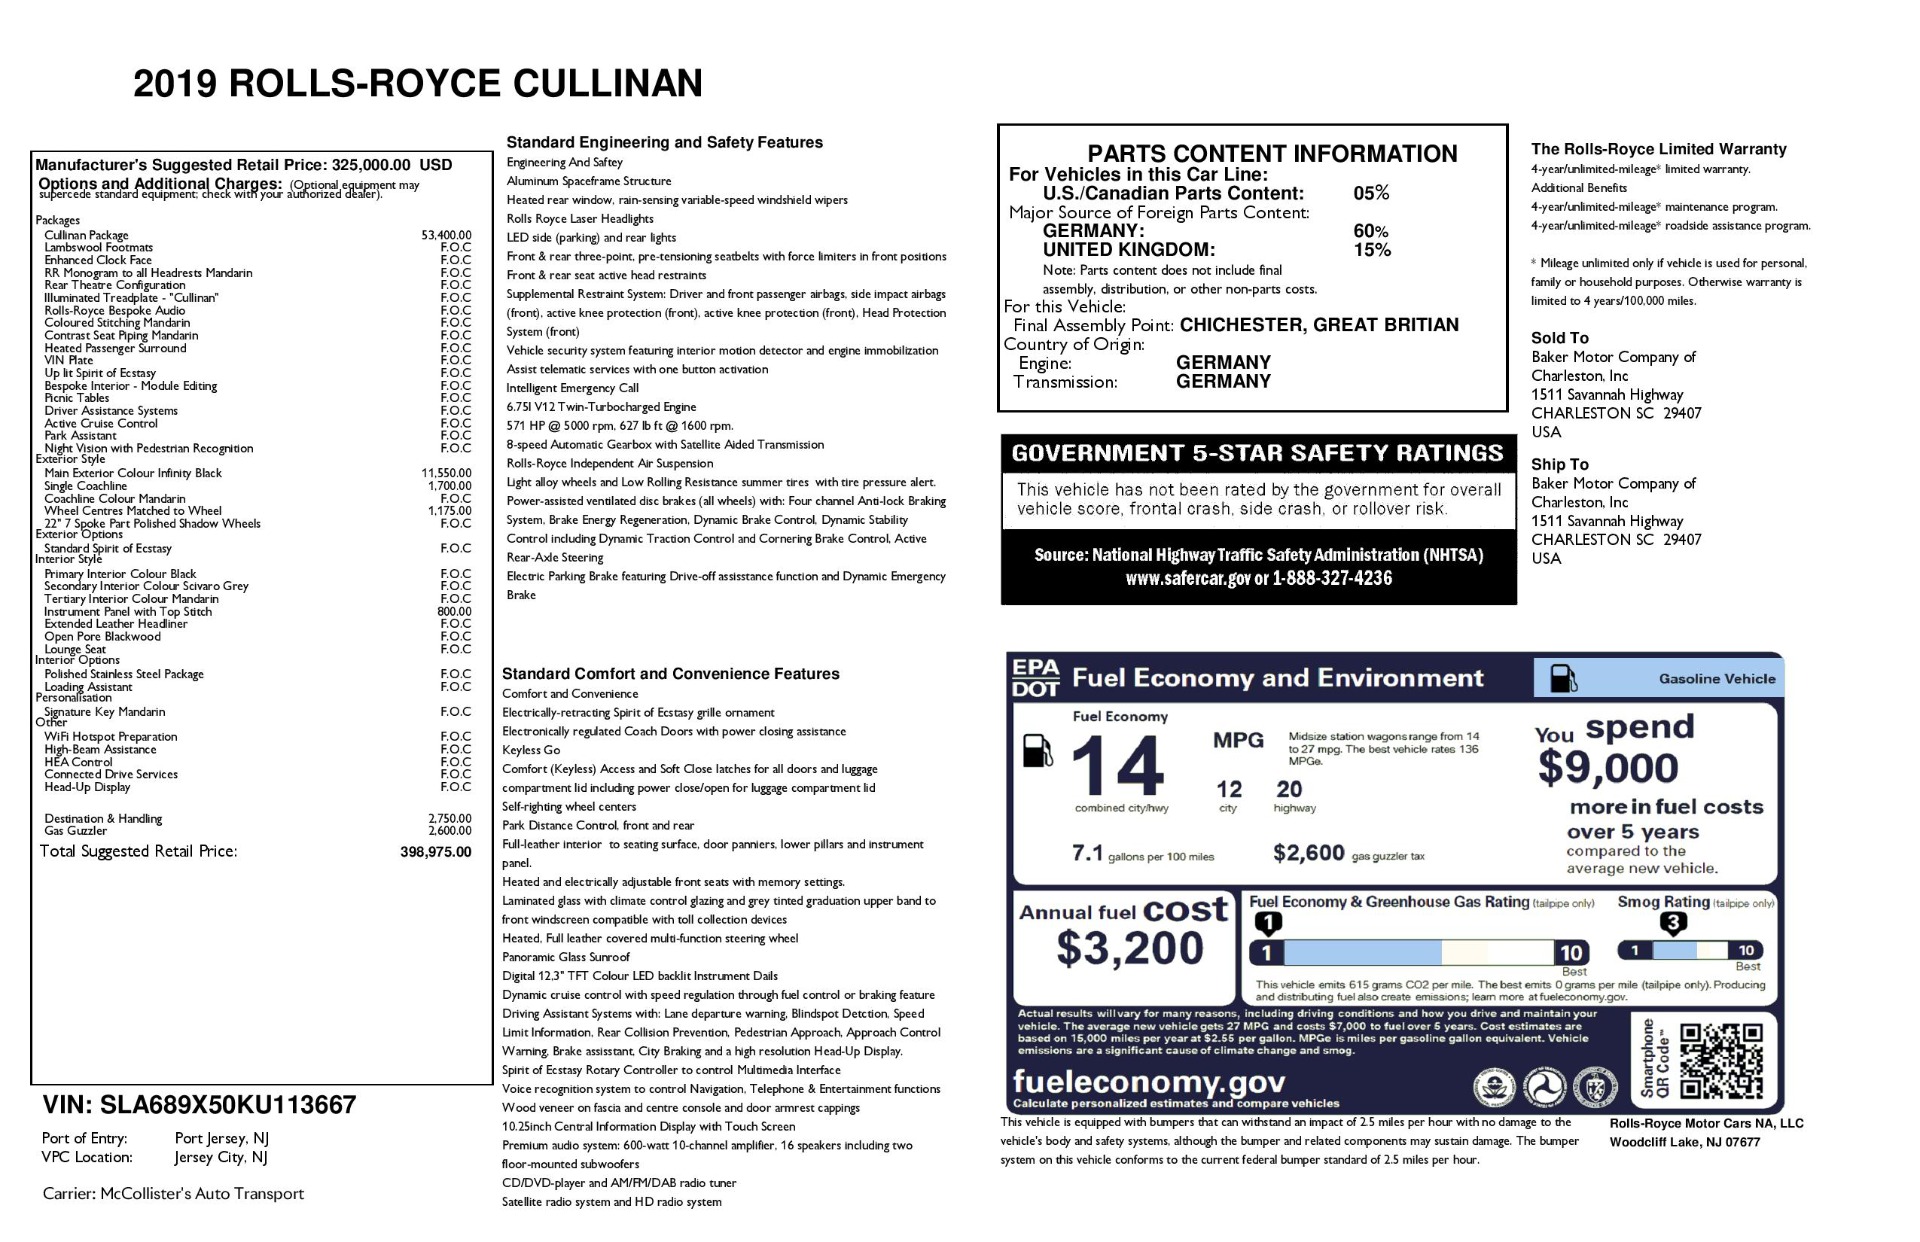 Used 2019 Rolls-Royce Cullinan MPG & Gas Mileage Data